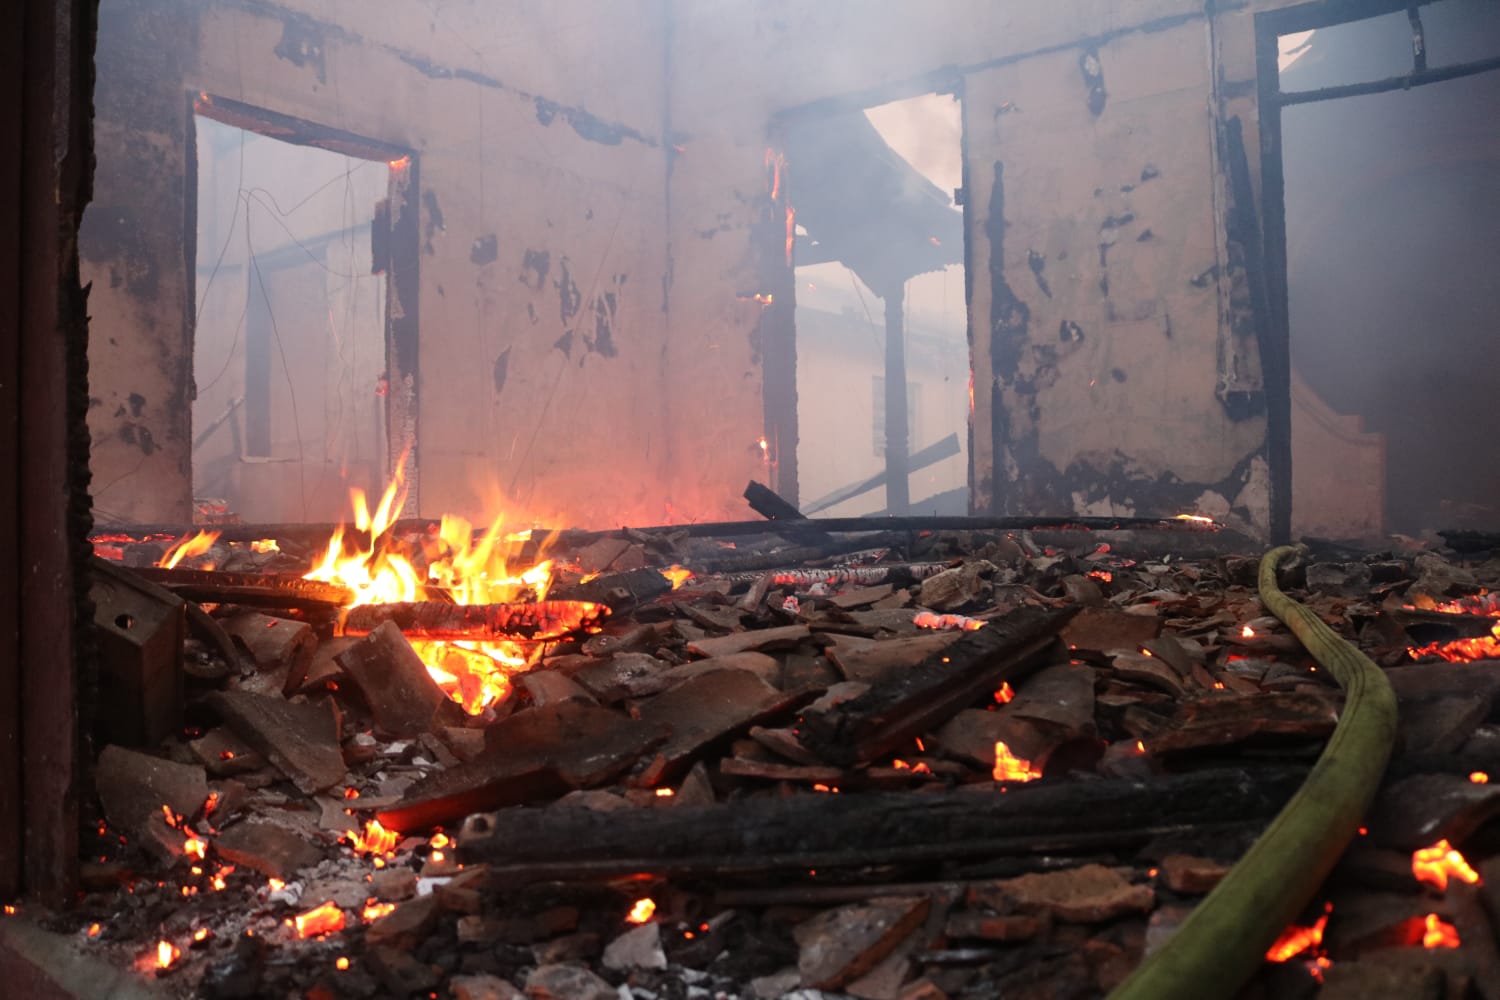 Incendio destruye taller de carpintería en Managua Managua. Radio La Primerísima 